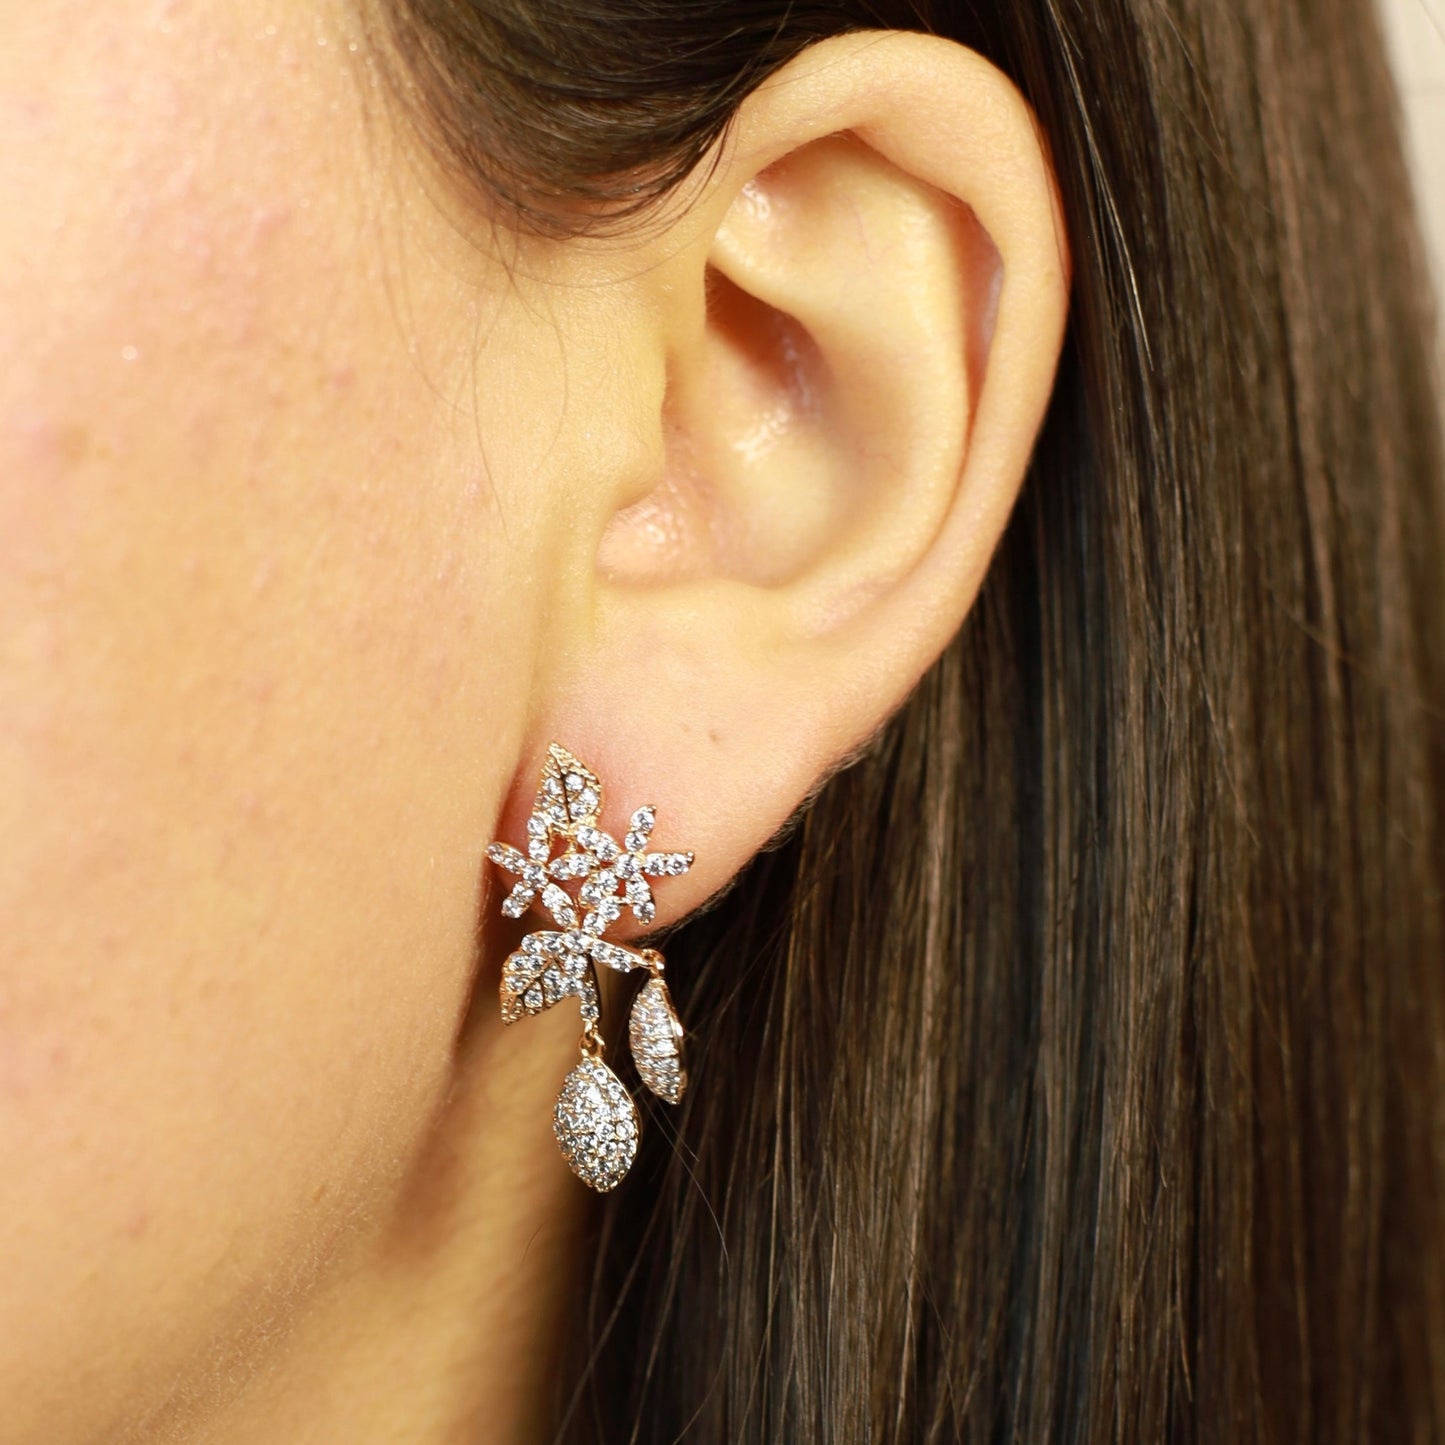 Flowers and leaves zirconia long earrings